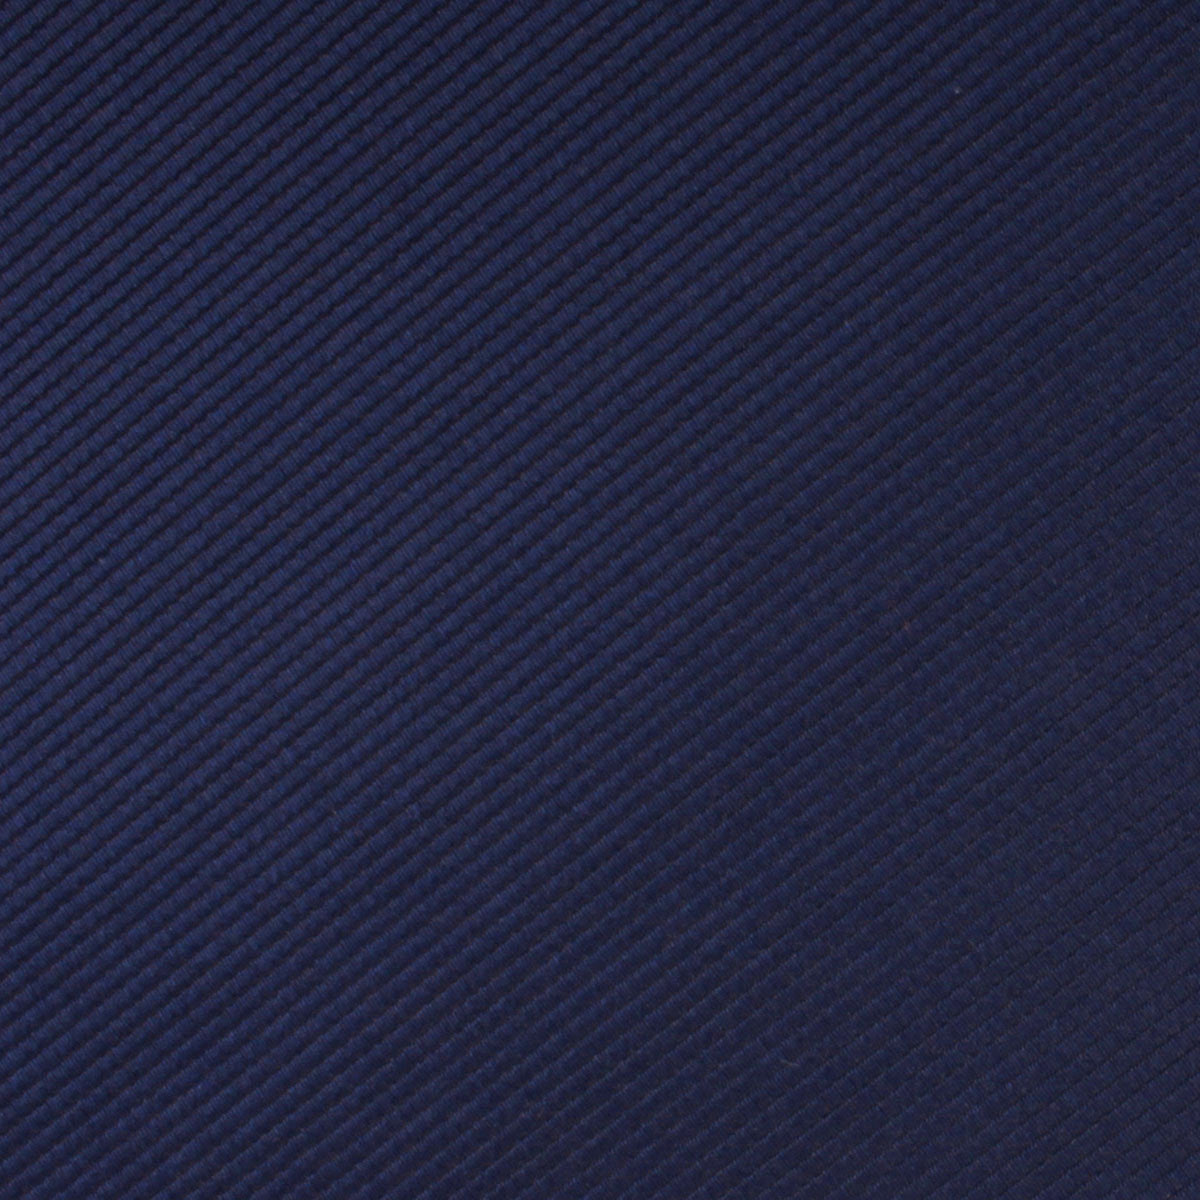 Marine Midnight Blue Twill Skinny Tie Fabric